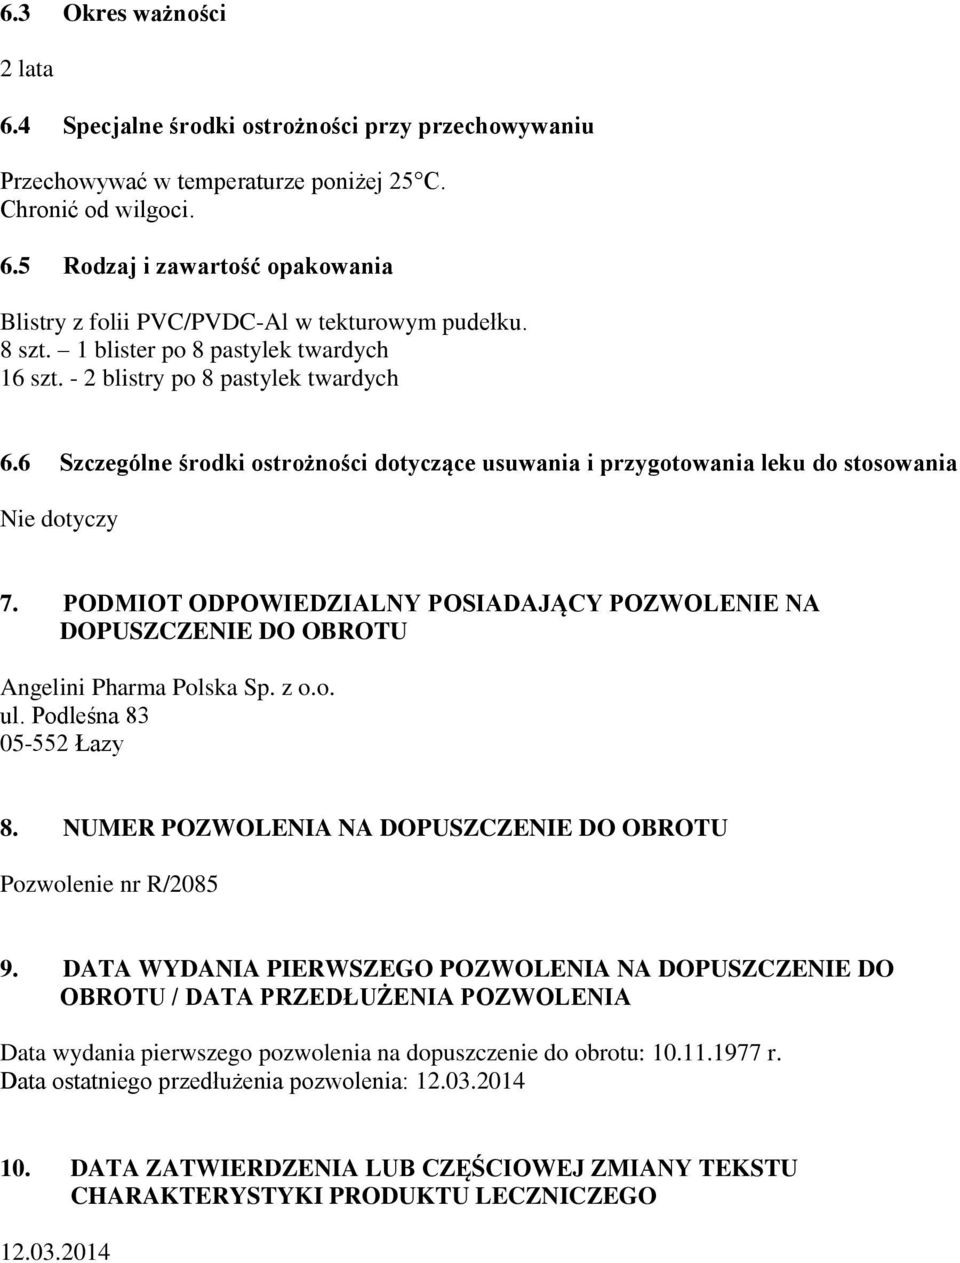 PODMIOT ODPOWIEDZIALNY POSIADAJĄCY POZWOLENIE NA DOPUSZCZENIE DO OBROTU Angelini Pharma Polska Sp. z o.o. ul. Podleśna 83 05-552 Łazy 8.